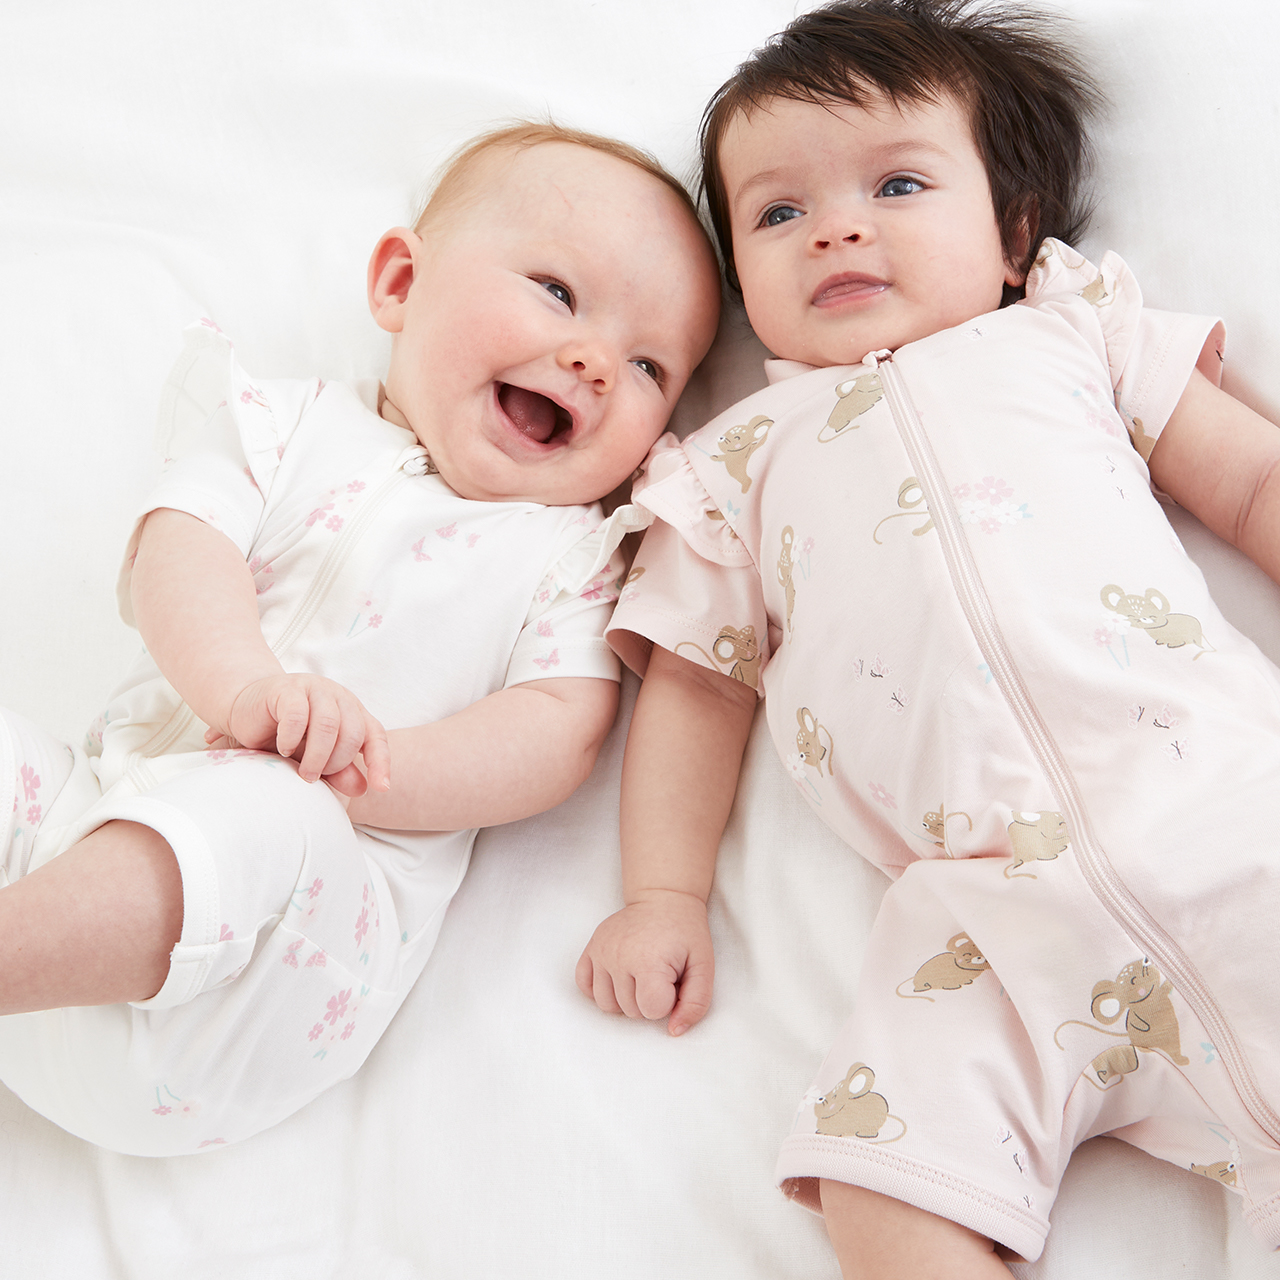 två bebisar i mjuka och sköna pyjamaser